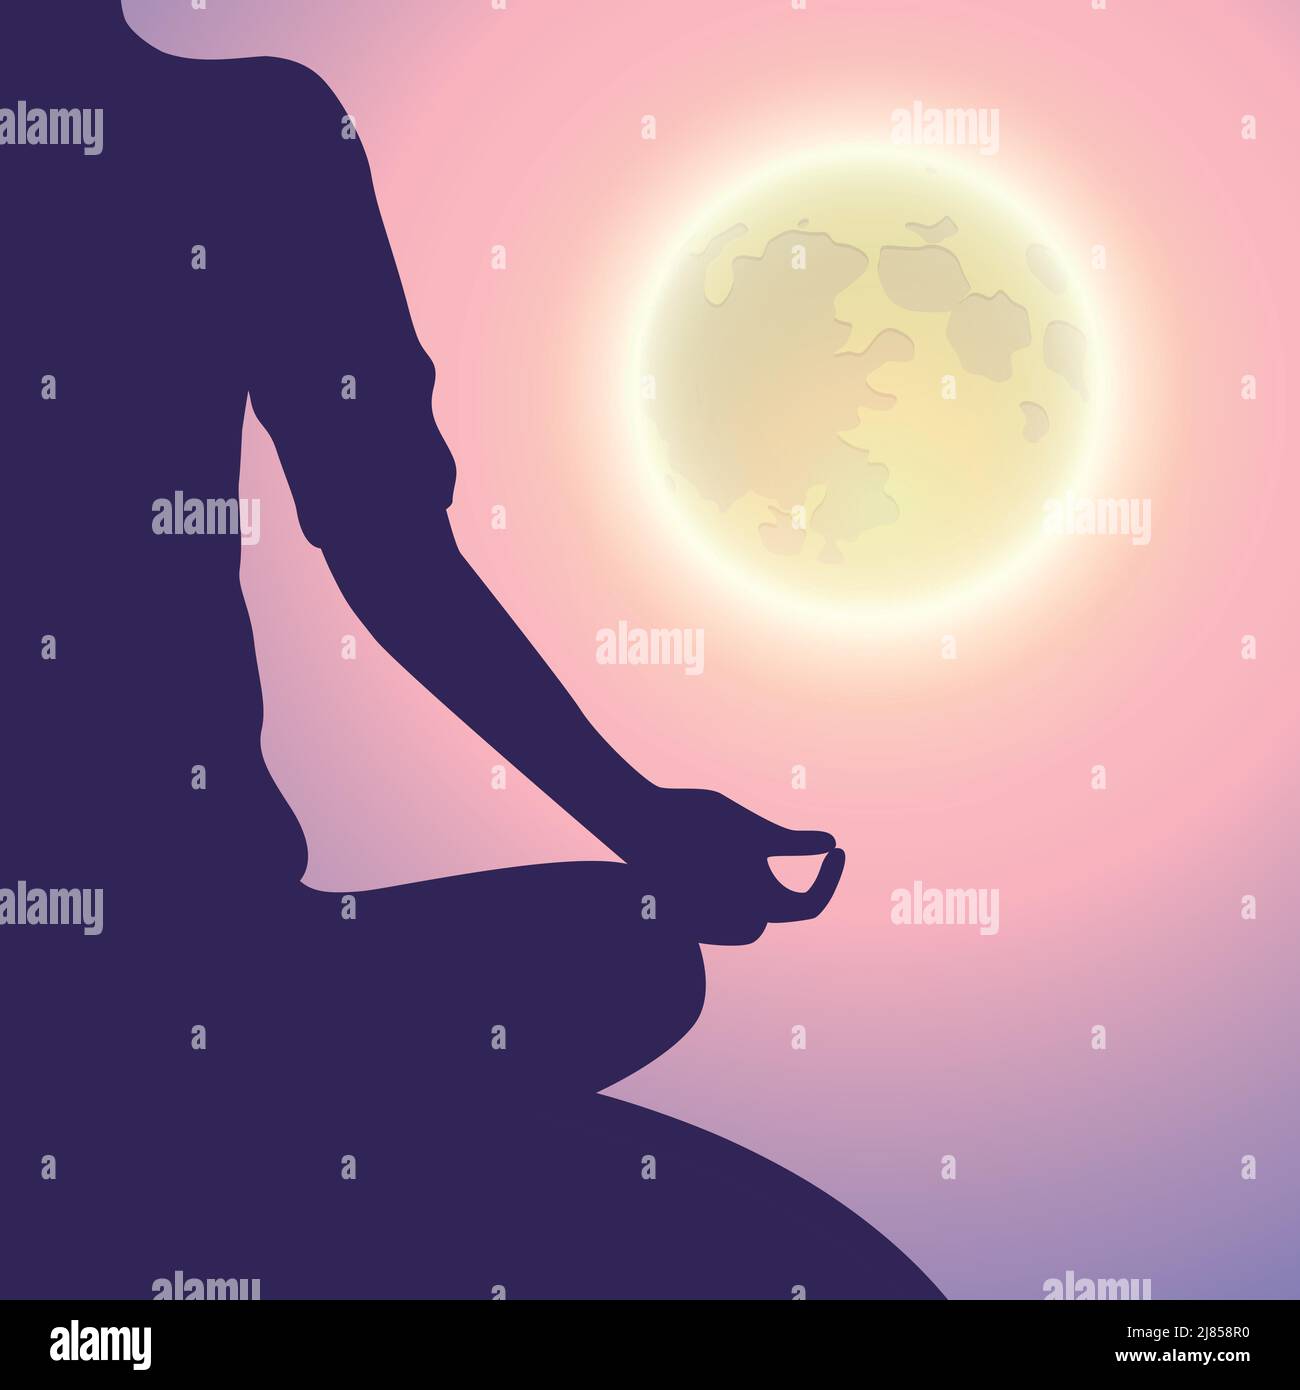 Friedliche Meditation bei Mondlicht Vollmond mystische Natur Stock Vektor